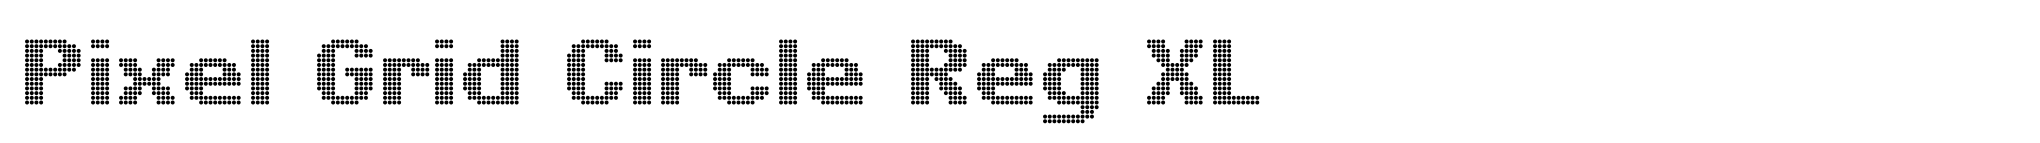 Pixel Grid Circle Reg XL image